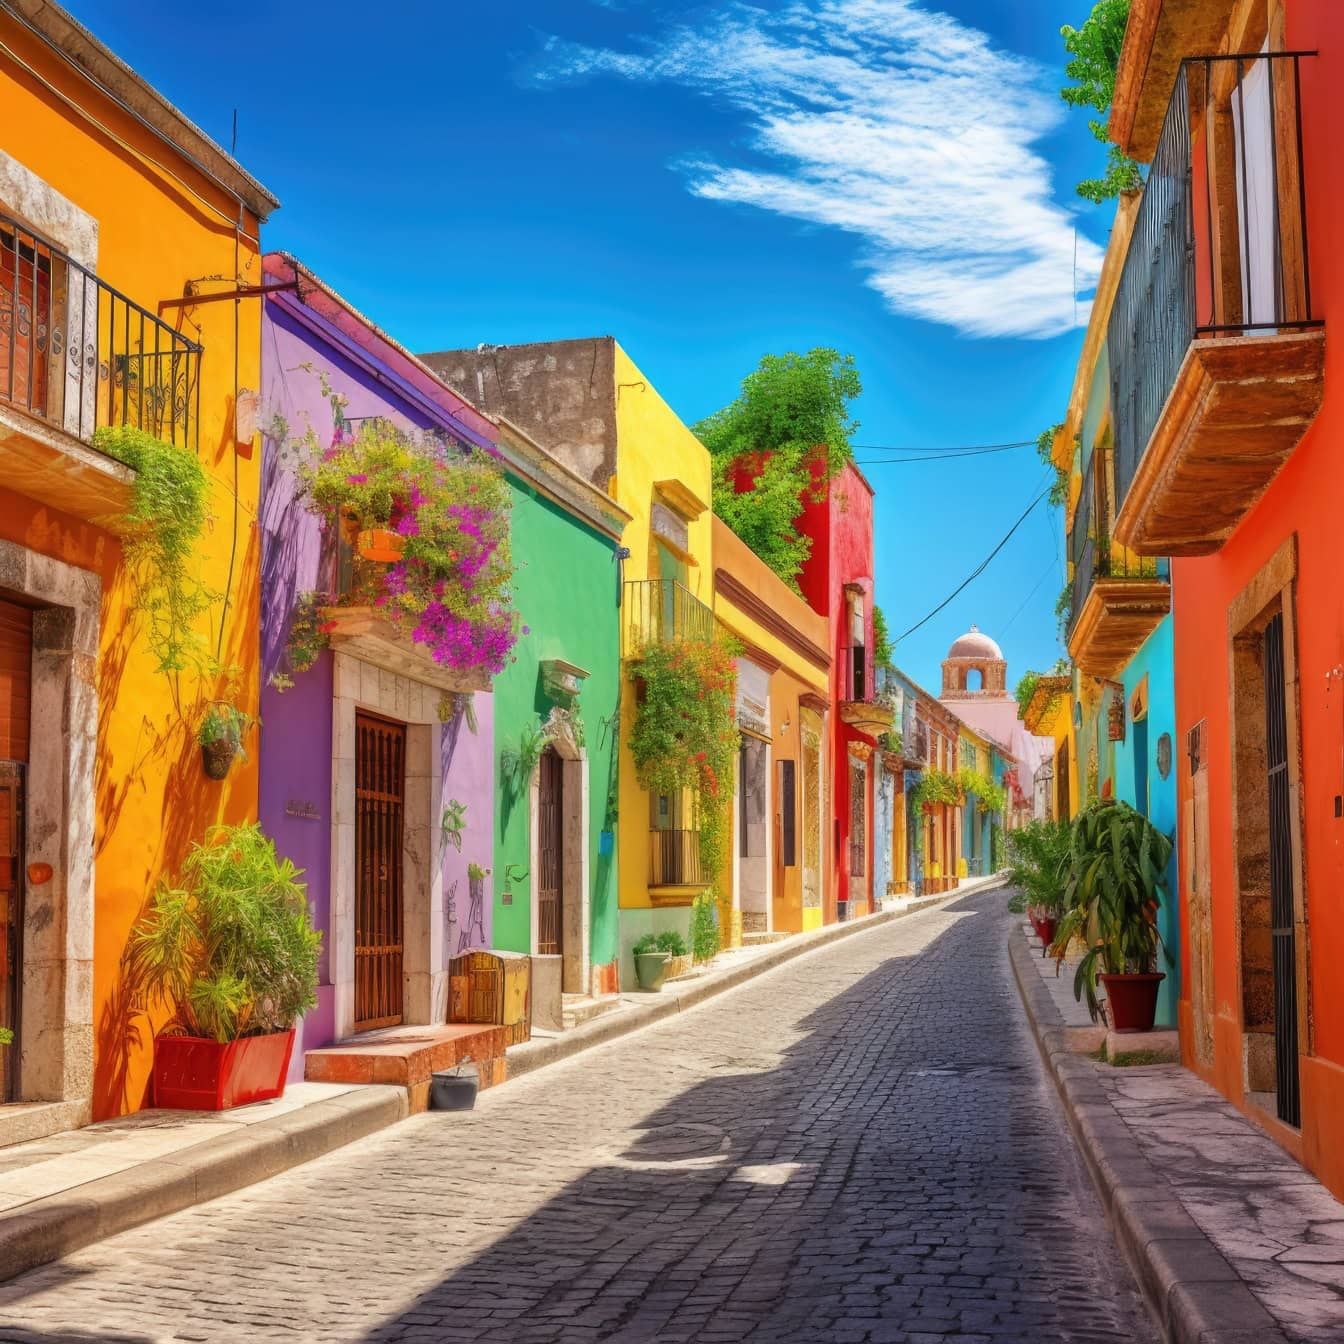 Grafik av en mexikansk gata i historisk del av en stad med hus i livfulla färger